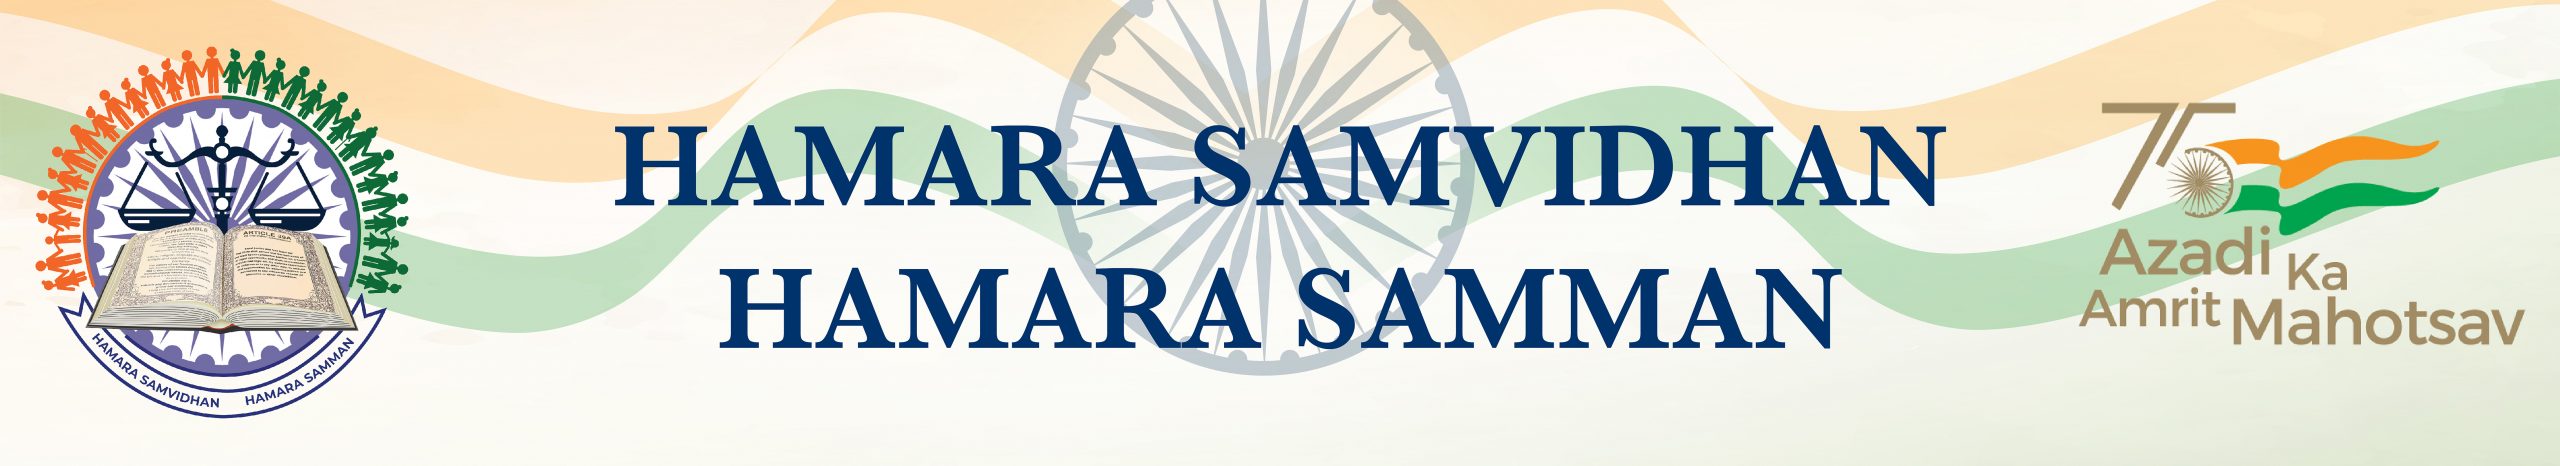 Hamara Samvidhan Hamara Samman Border